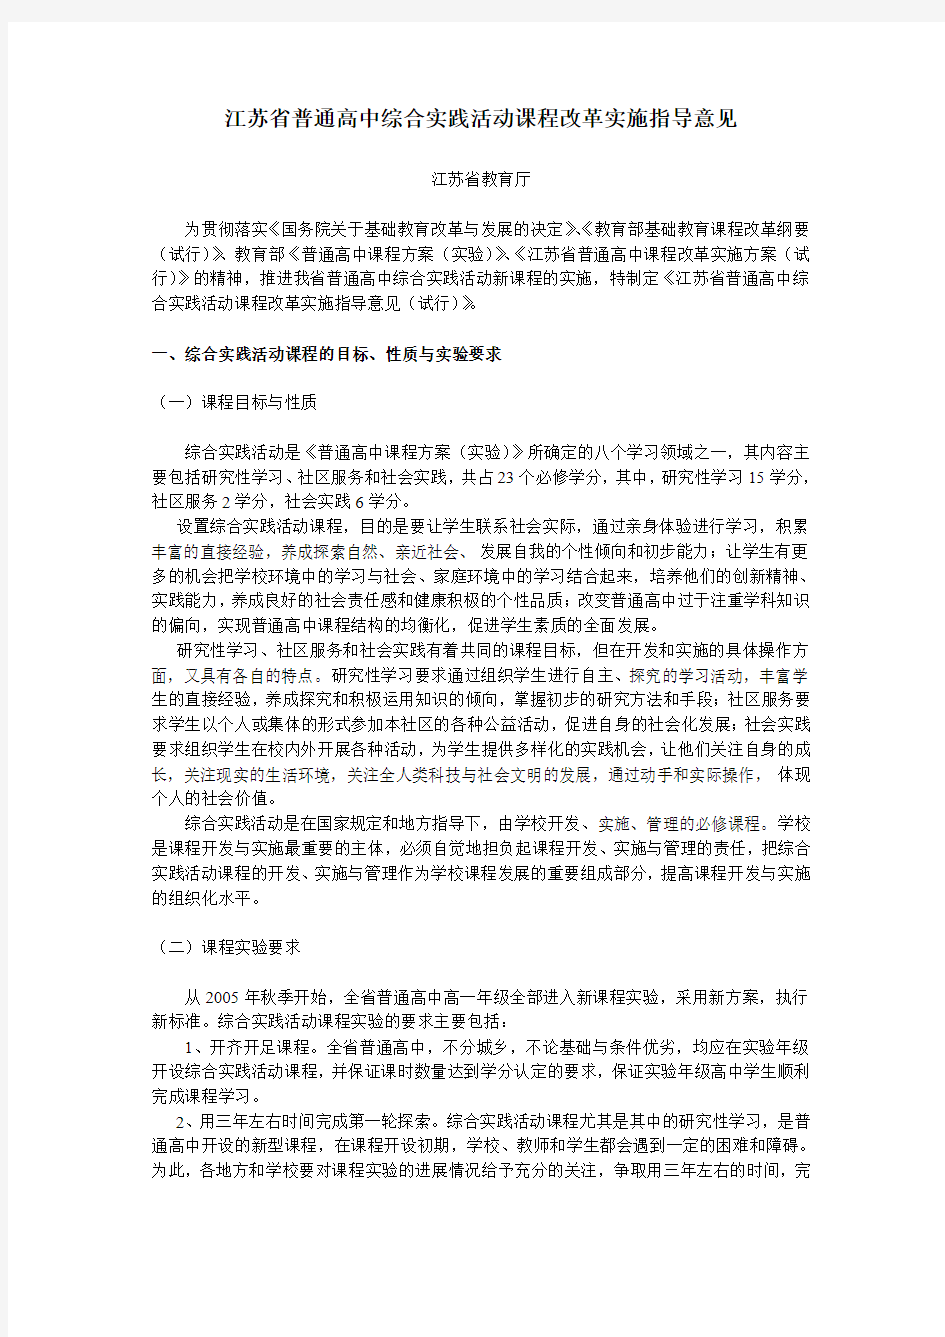 江苏省普通高中综合实践活动课程改革实施指导意见